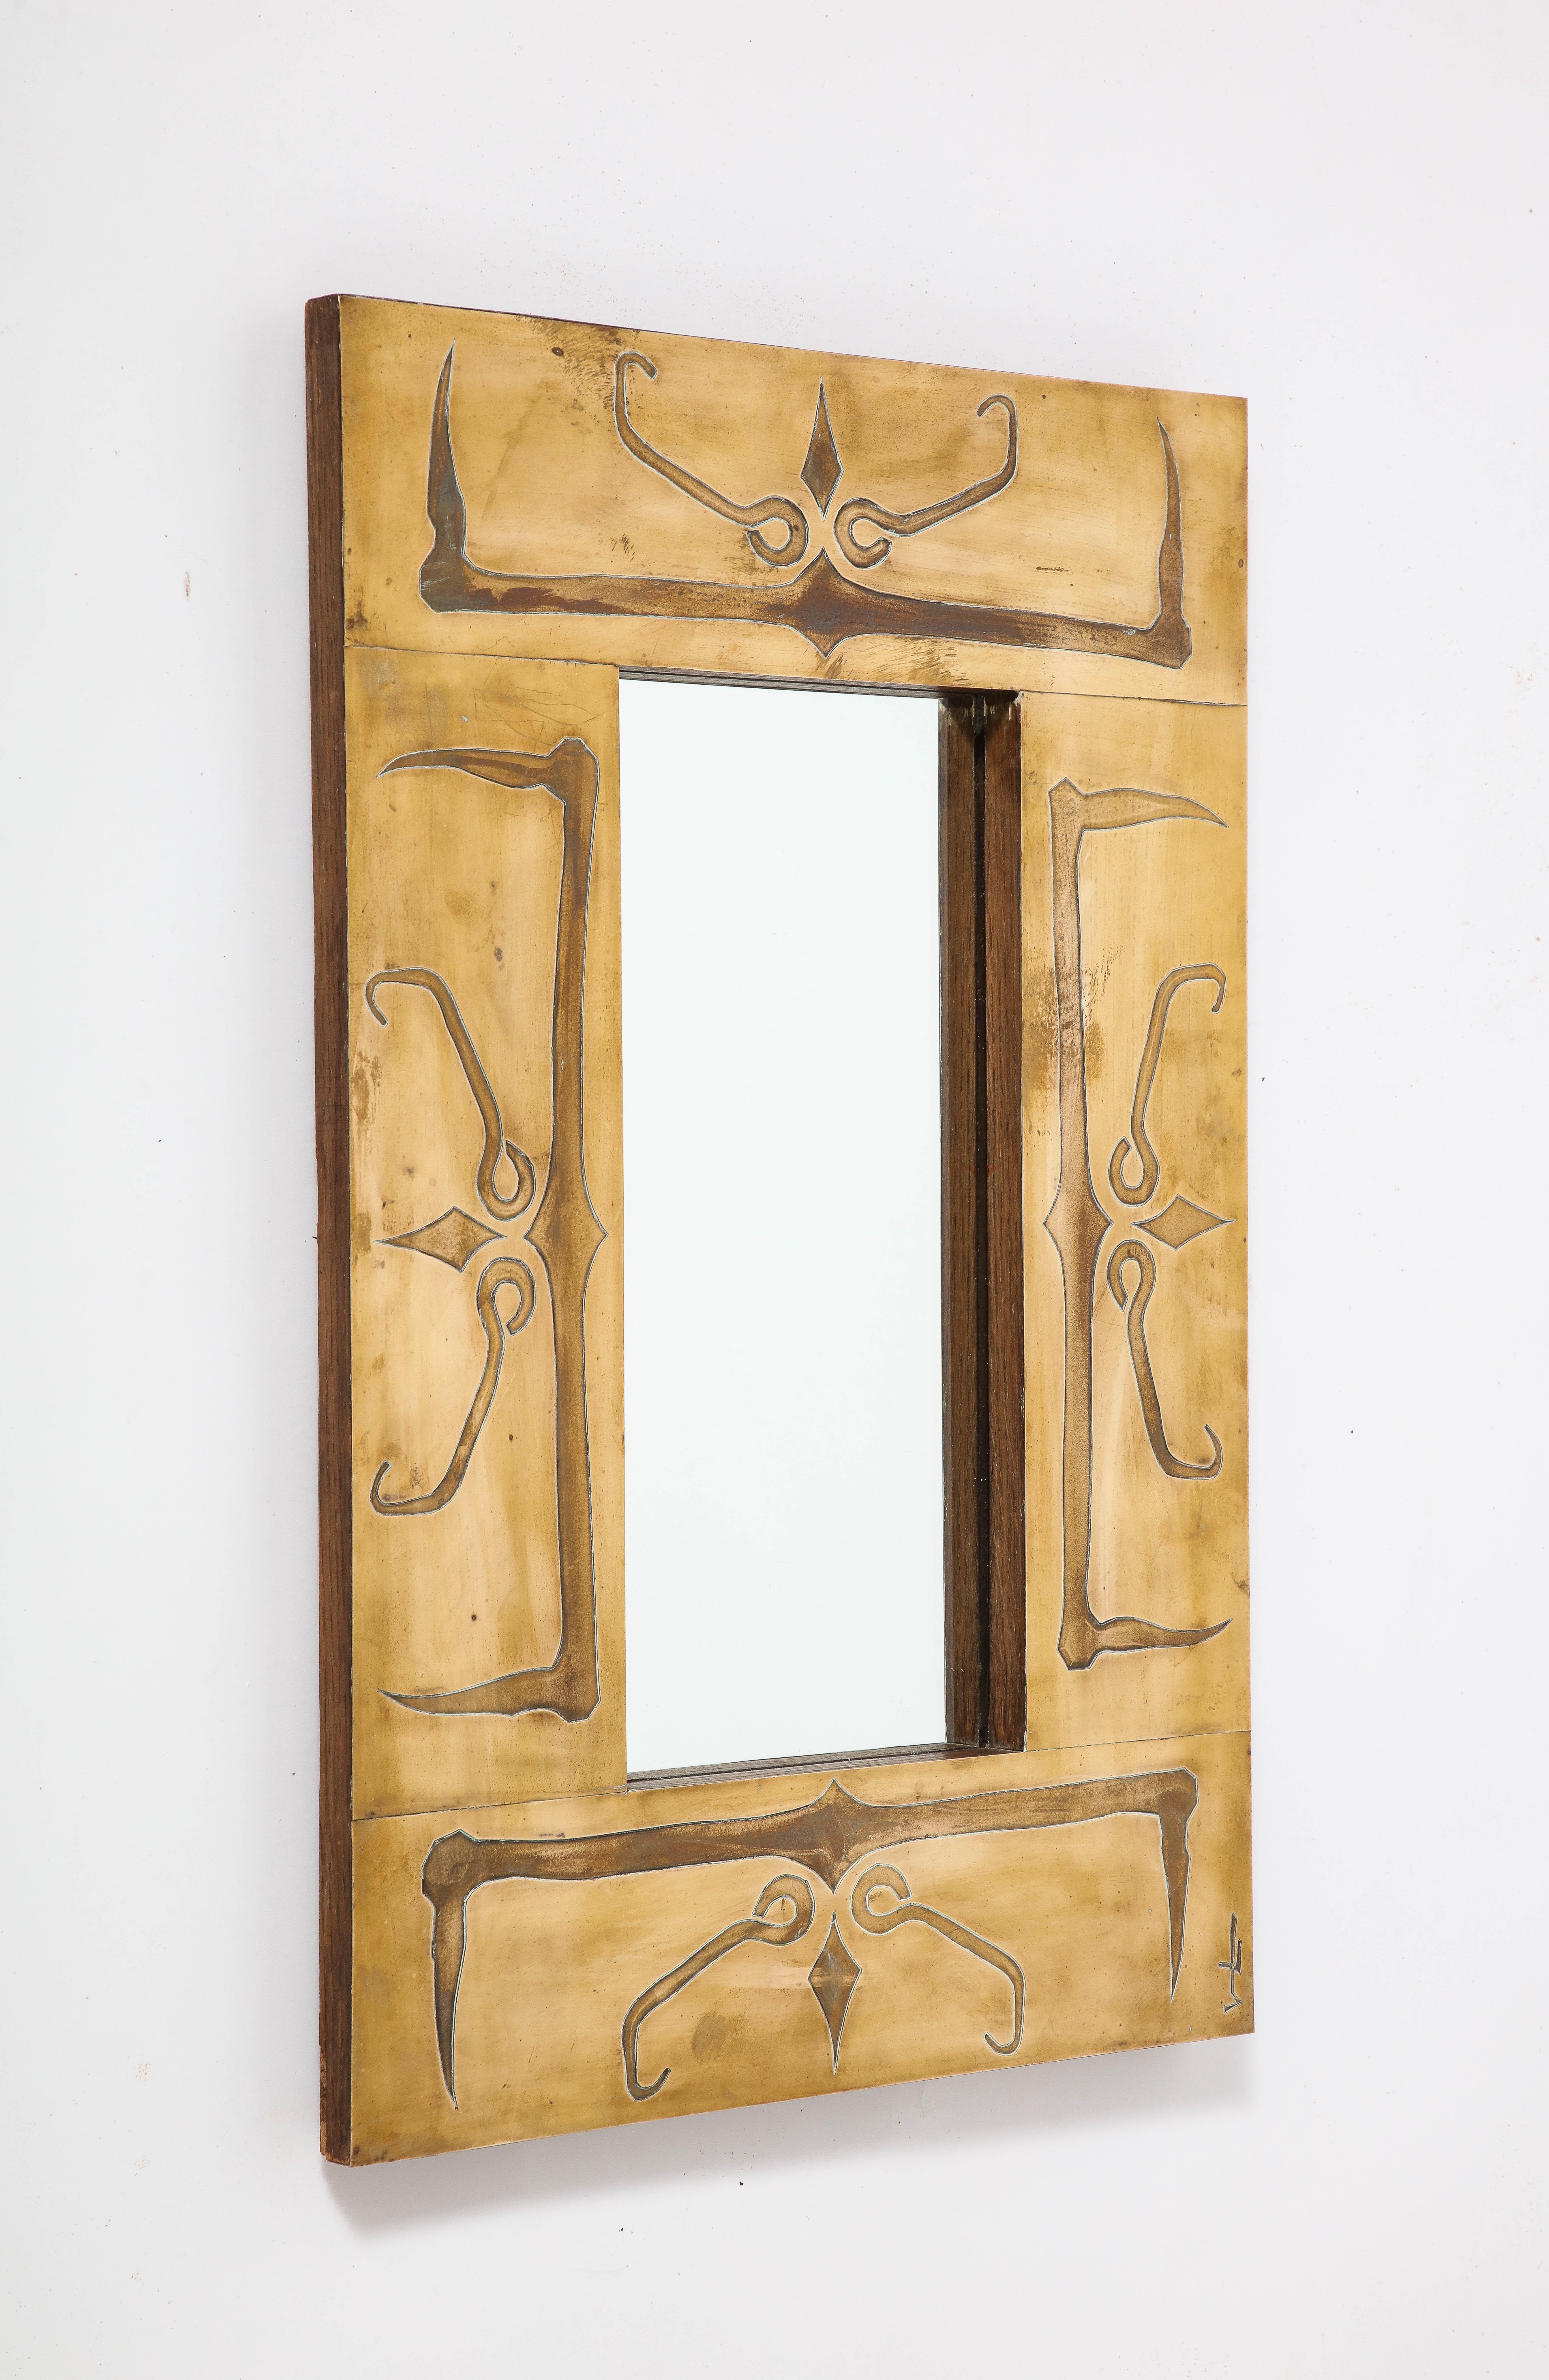 Miroir à encadrement en laiton de style Art déco français, très unique, avec des motifs abstraits gravés.  motif.  Signé dans le coin inférieur droit. 
France, vers 1940
Taille : 24